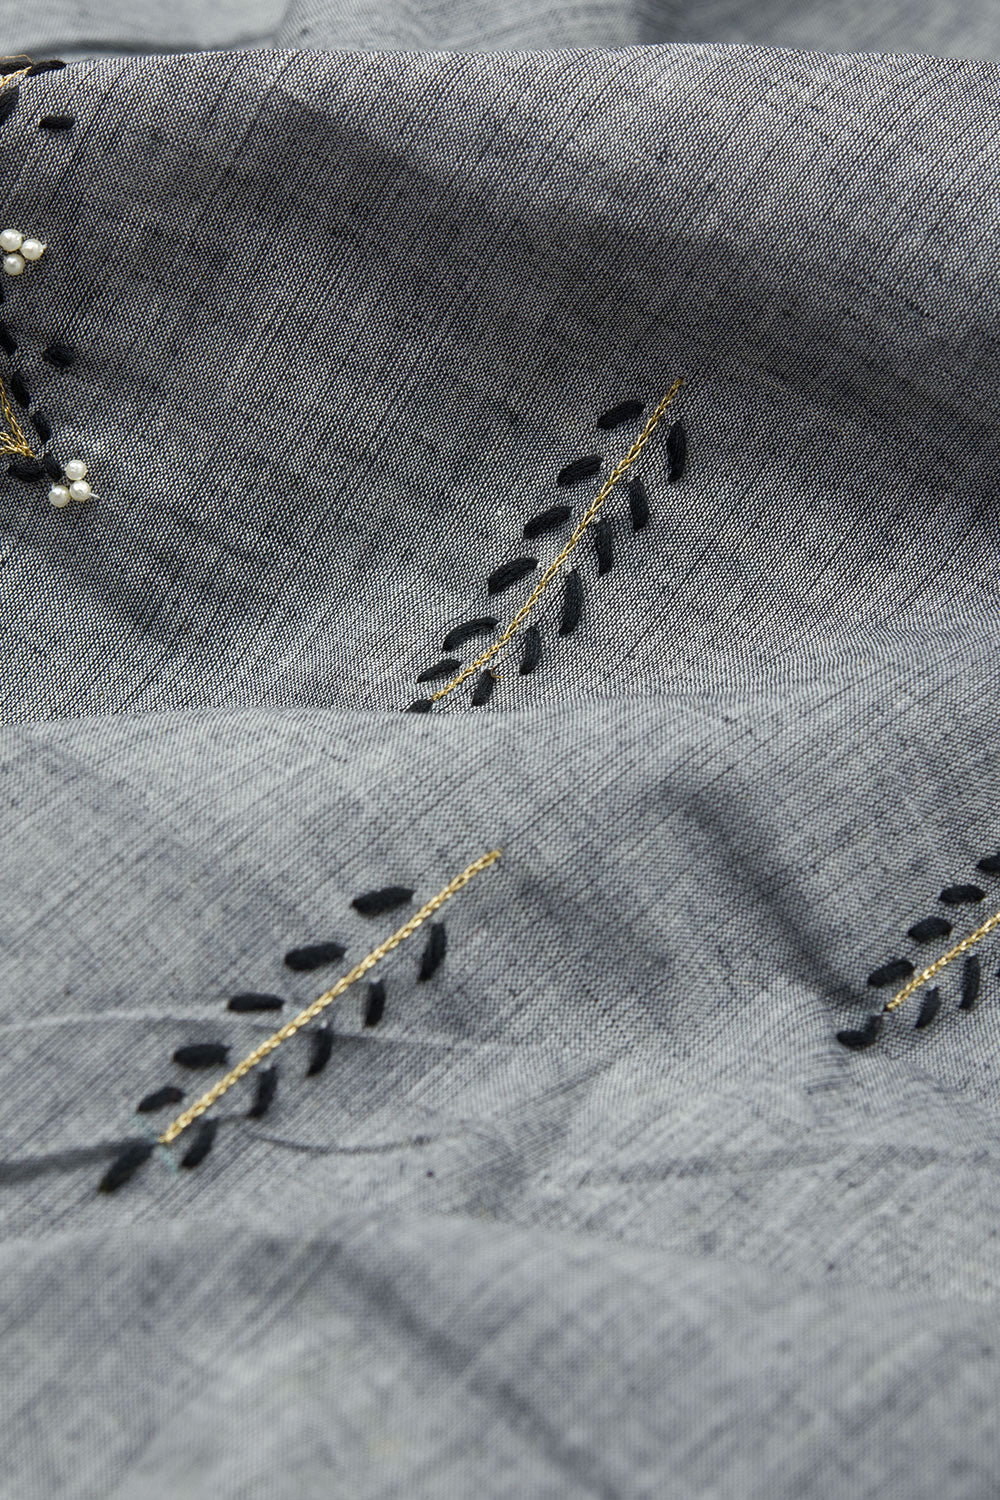 Mountain Mist Grey Aari Embroidered Mangalgiri Cotton Blouse Material 10062439